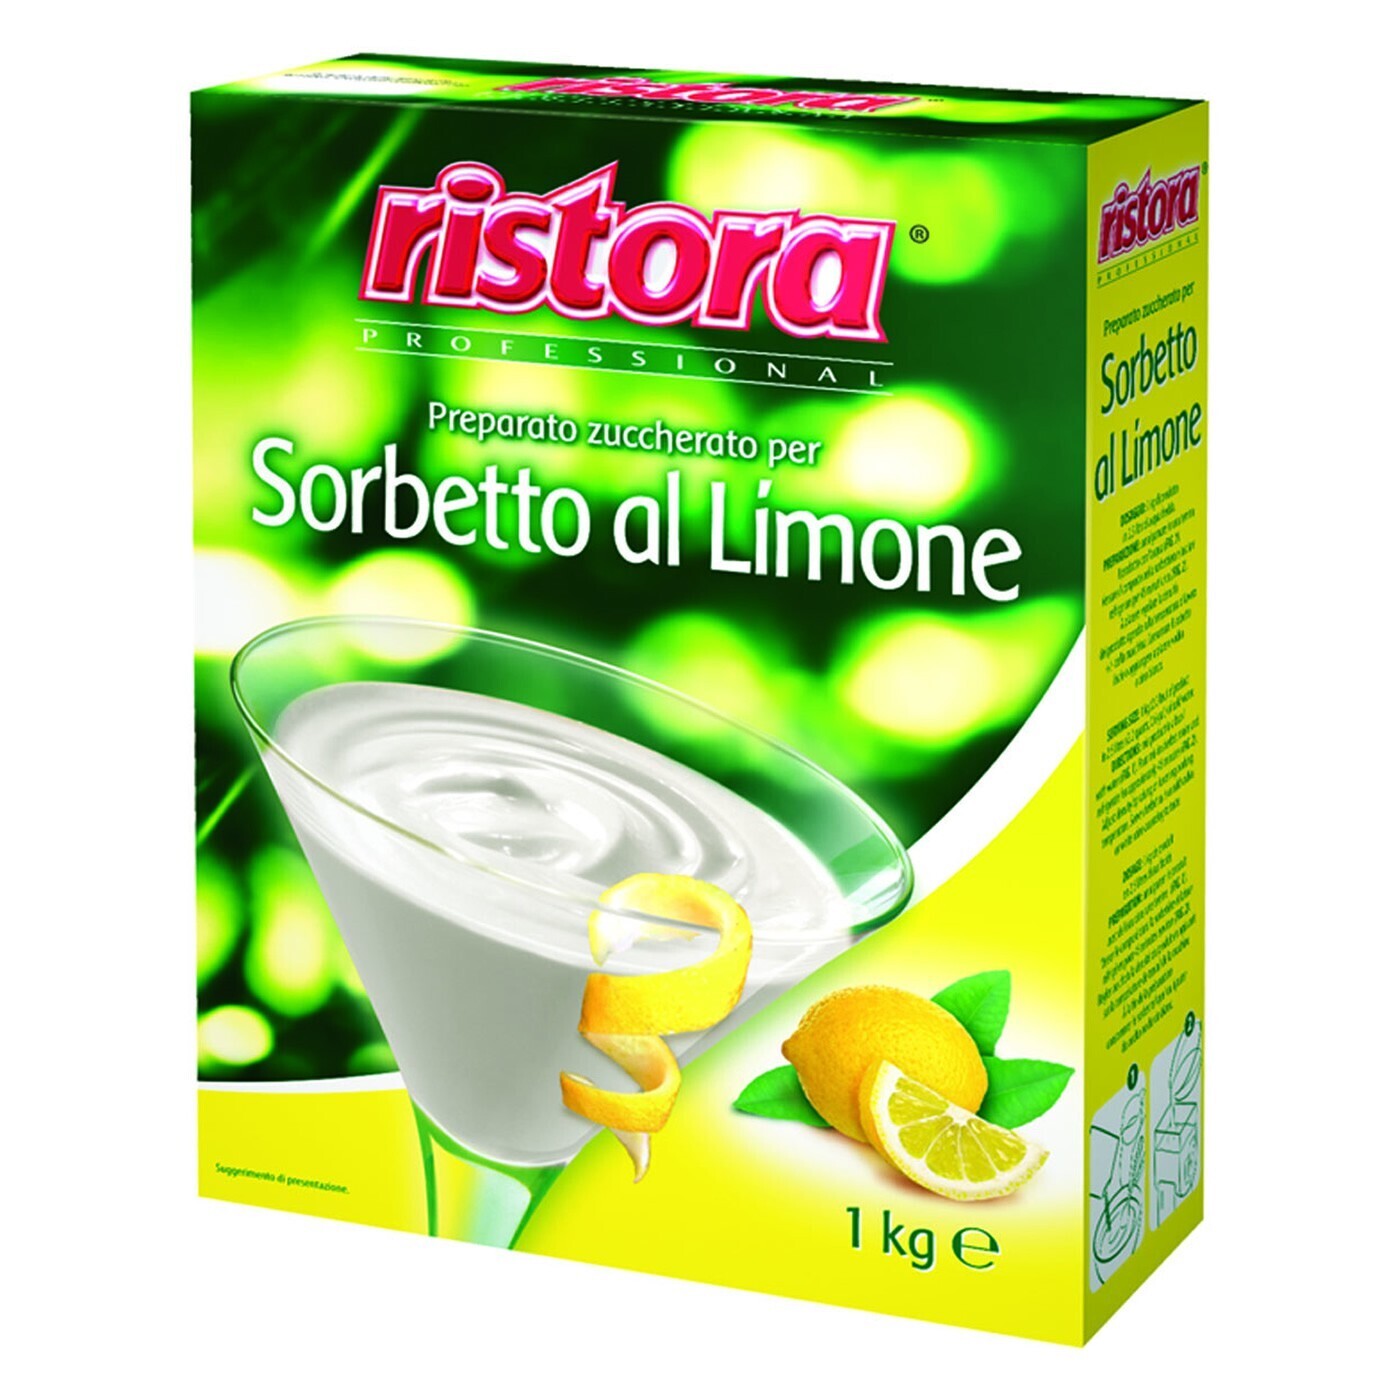 Crema Sorbetto Limone KG.1